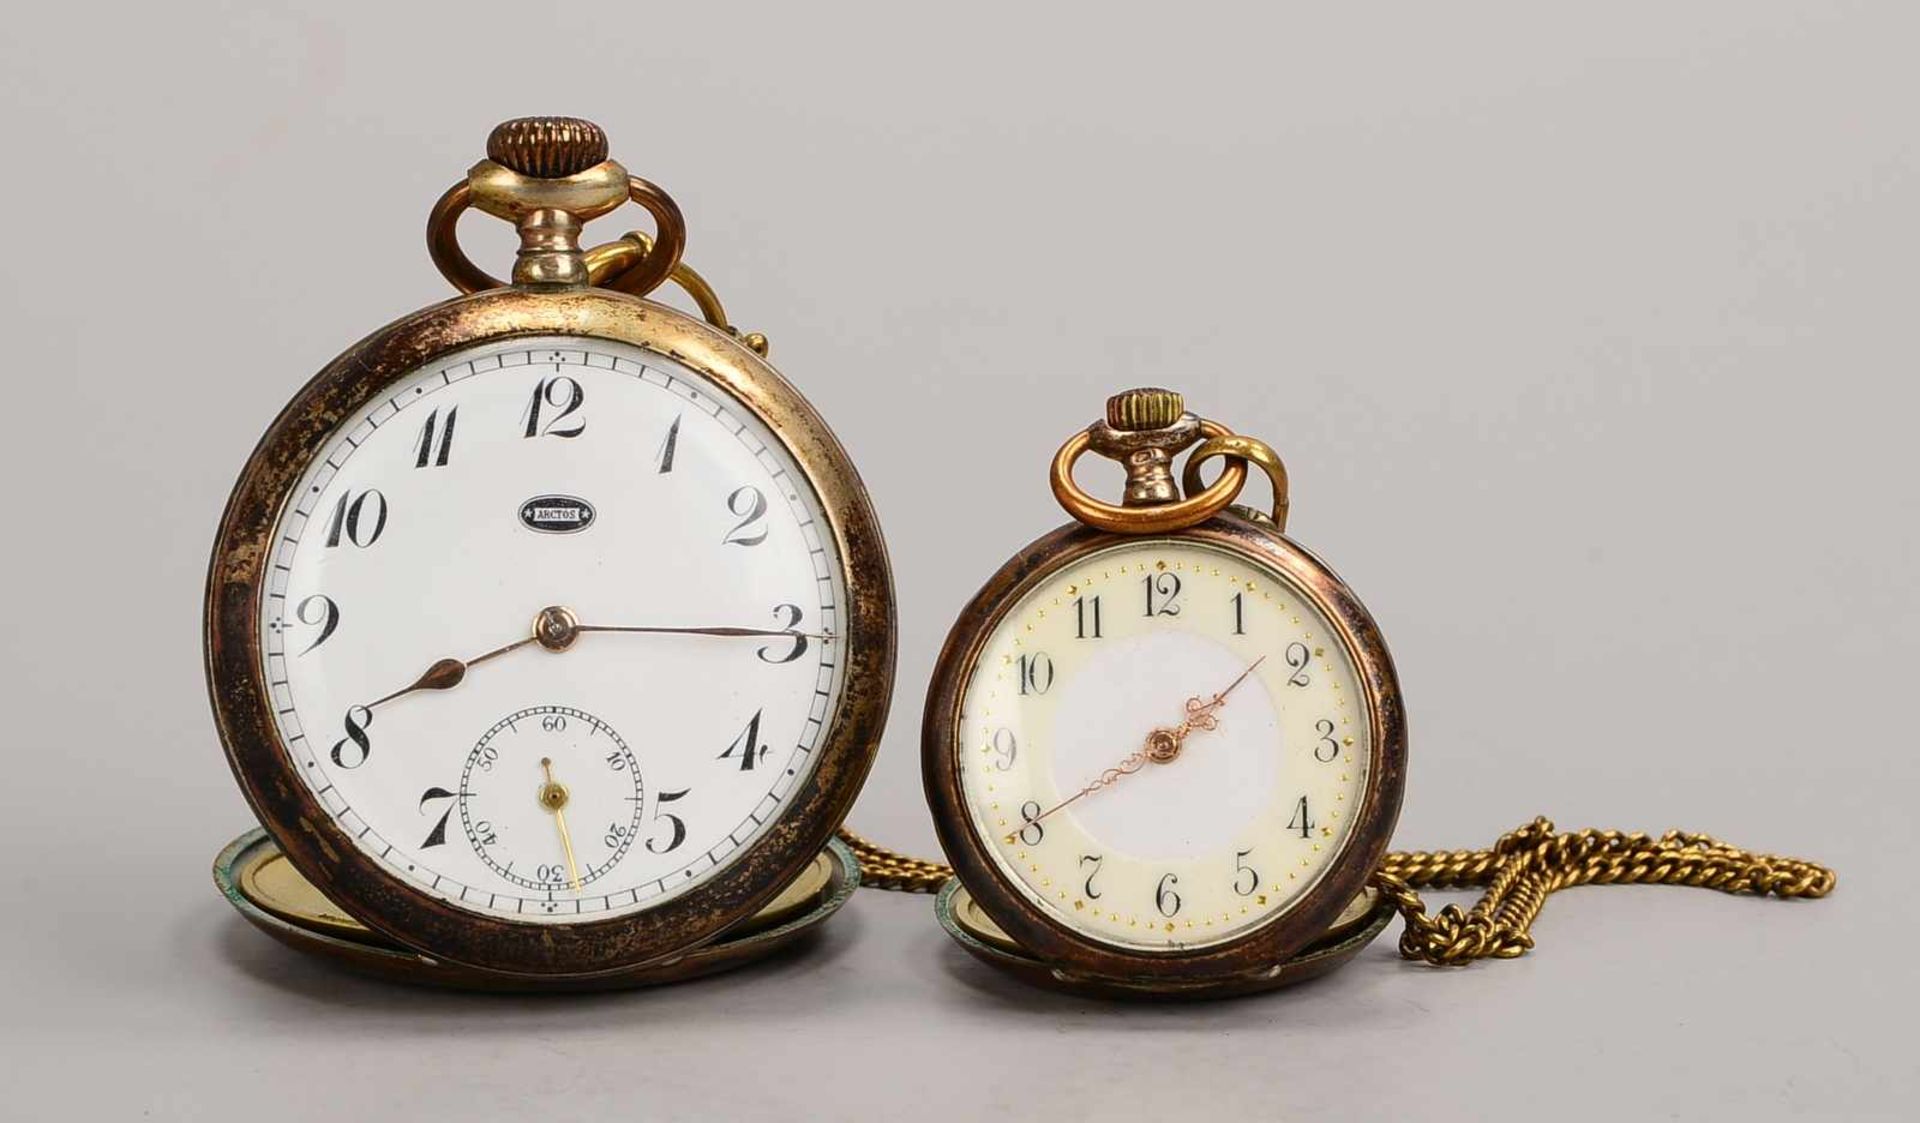 2 Taschenuhren, 800 Silber: 1x Arctos, mit Sekundenanzeige auf der '6', Durchmesser Gehäuse Ø 5